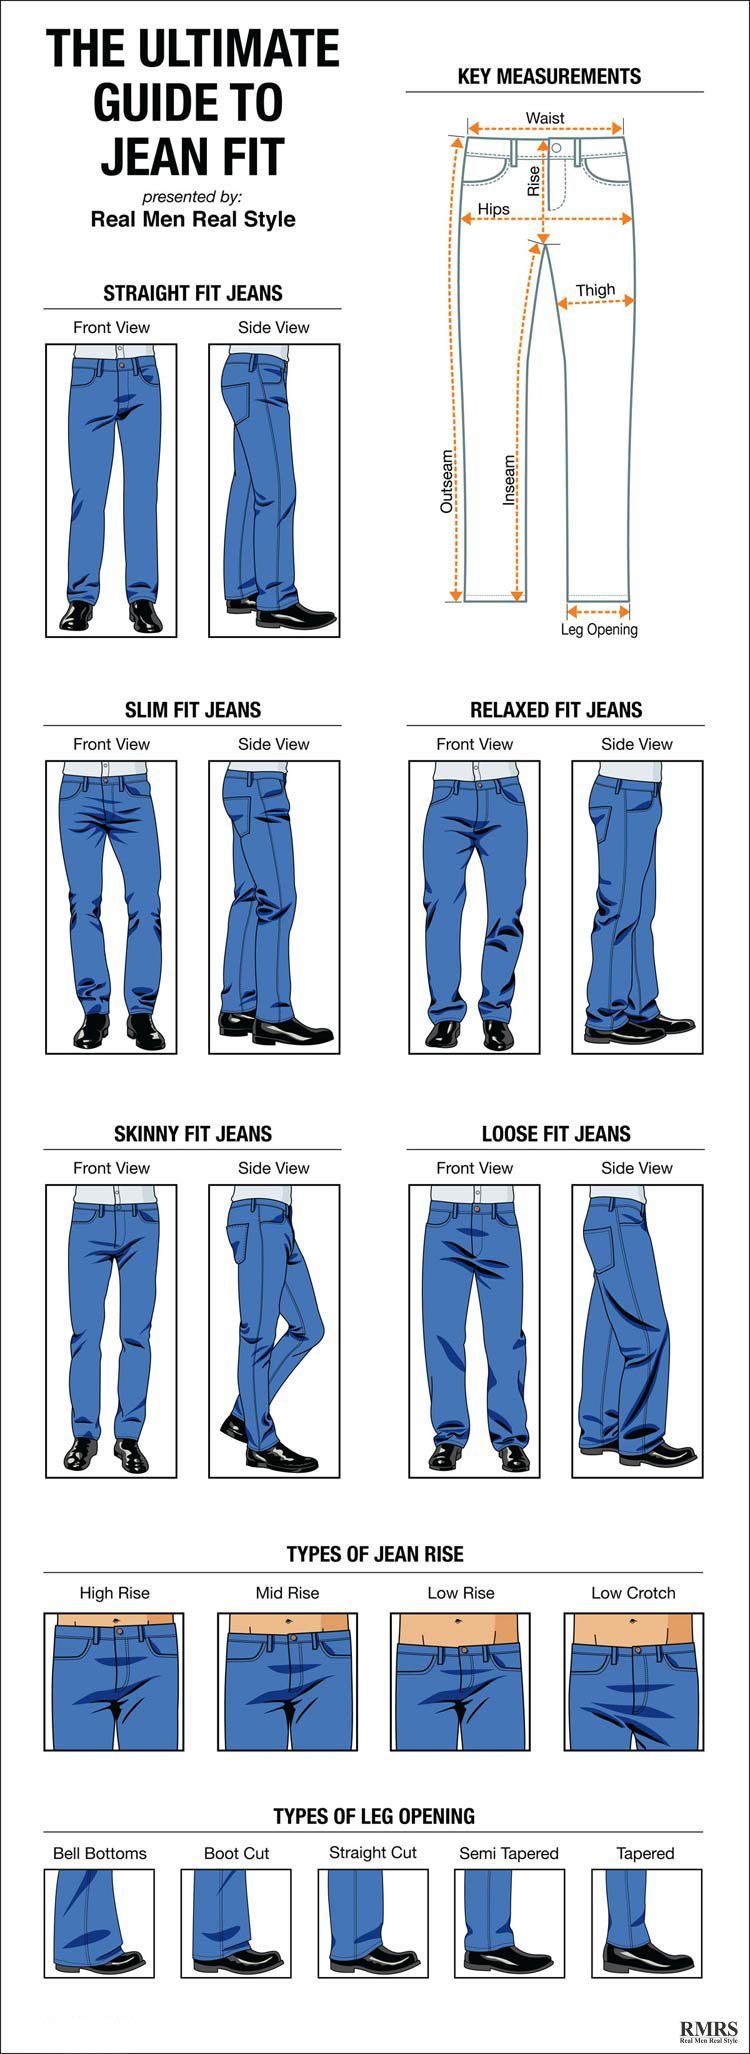 איך ג'ינס צריך להתאים - מדריך הגבר לאופציות בסגנון ז'אן - אינפוגרפיקה חדשה